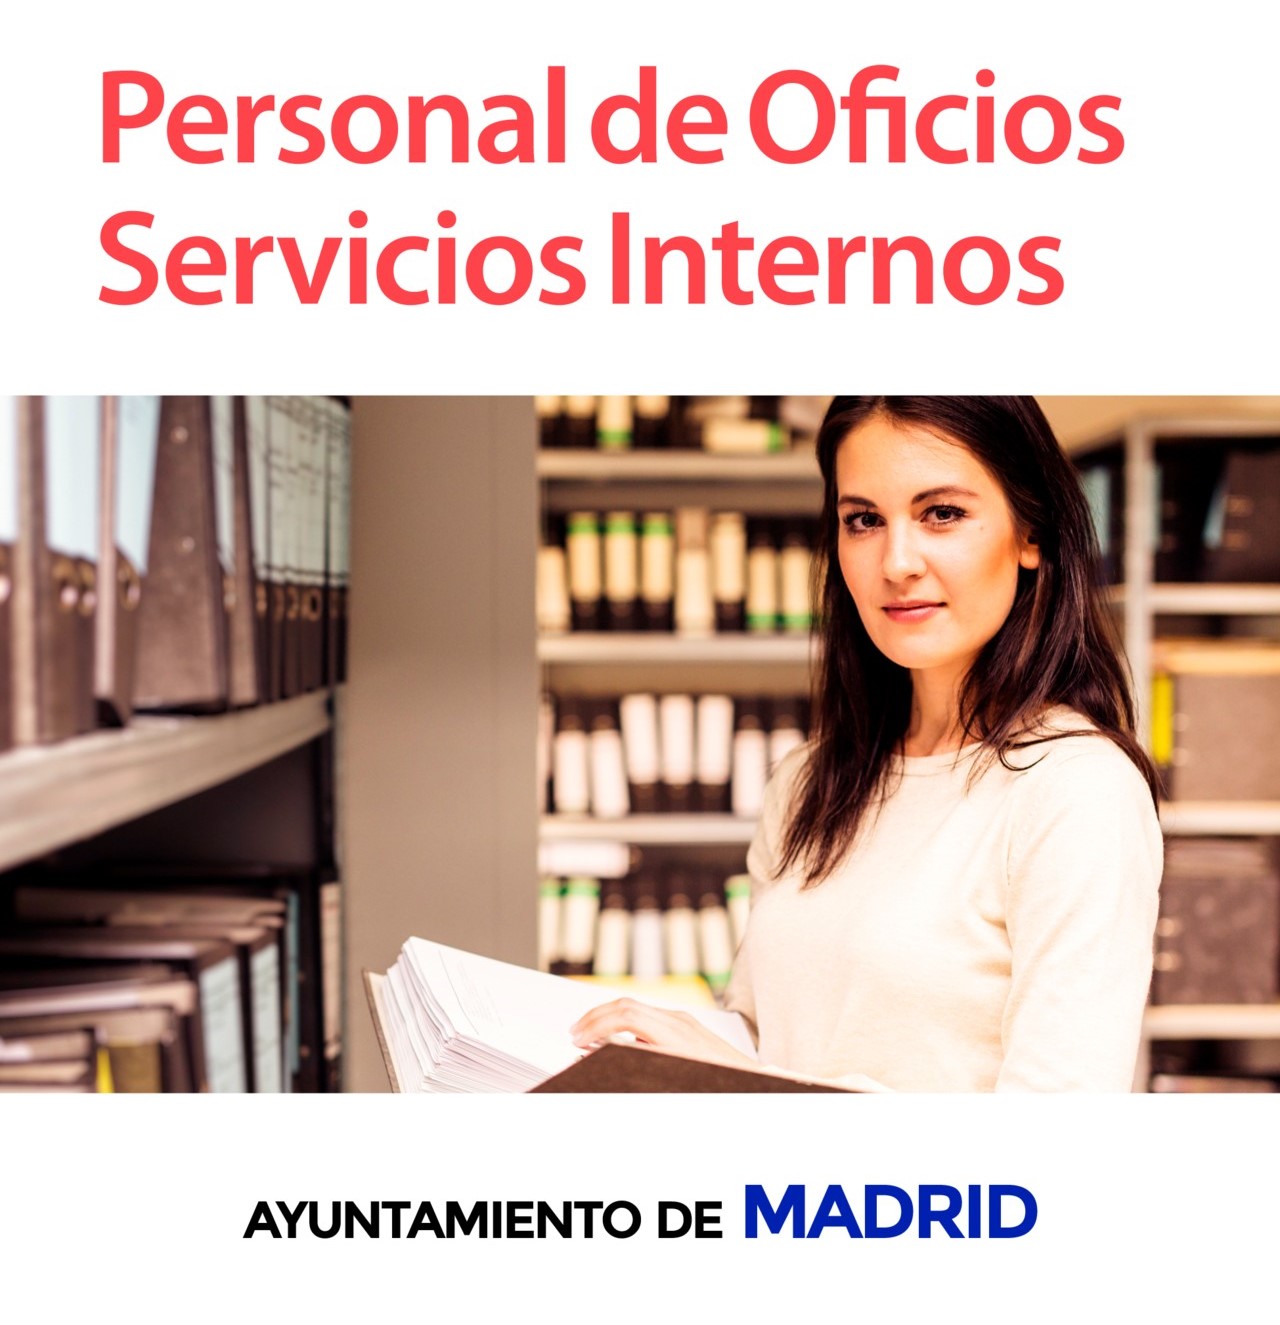 En este momento estás viendo PERSONAL DE OFICIOS, SERVICIOS INTERNOS AYUNTAMIENTO MADRID.